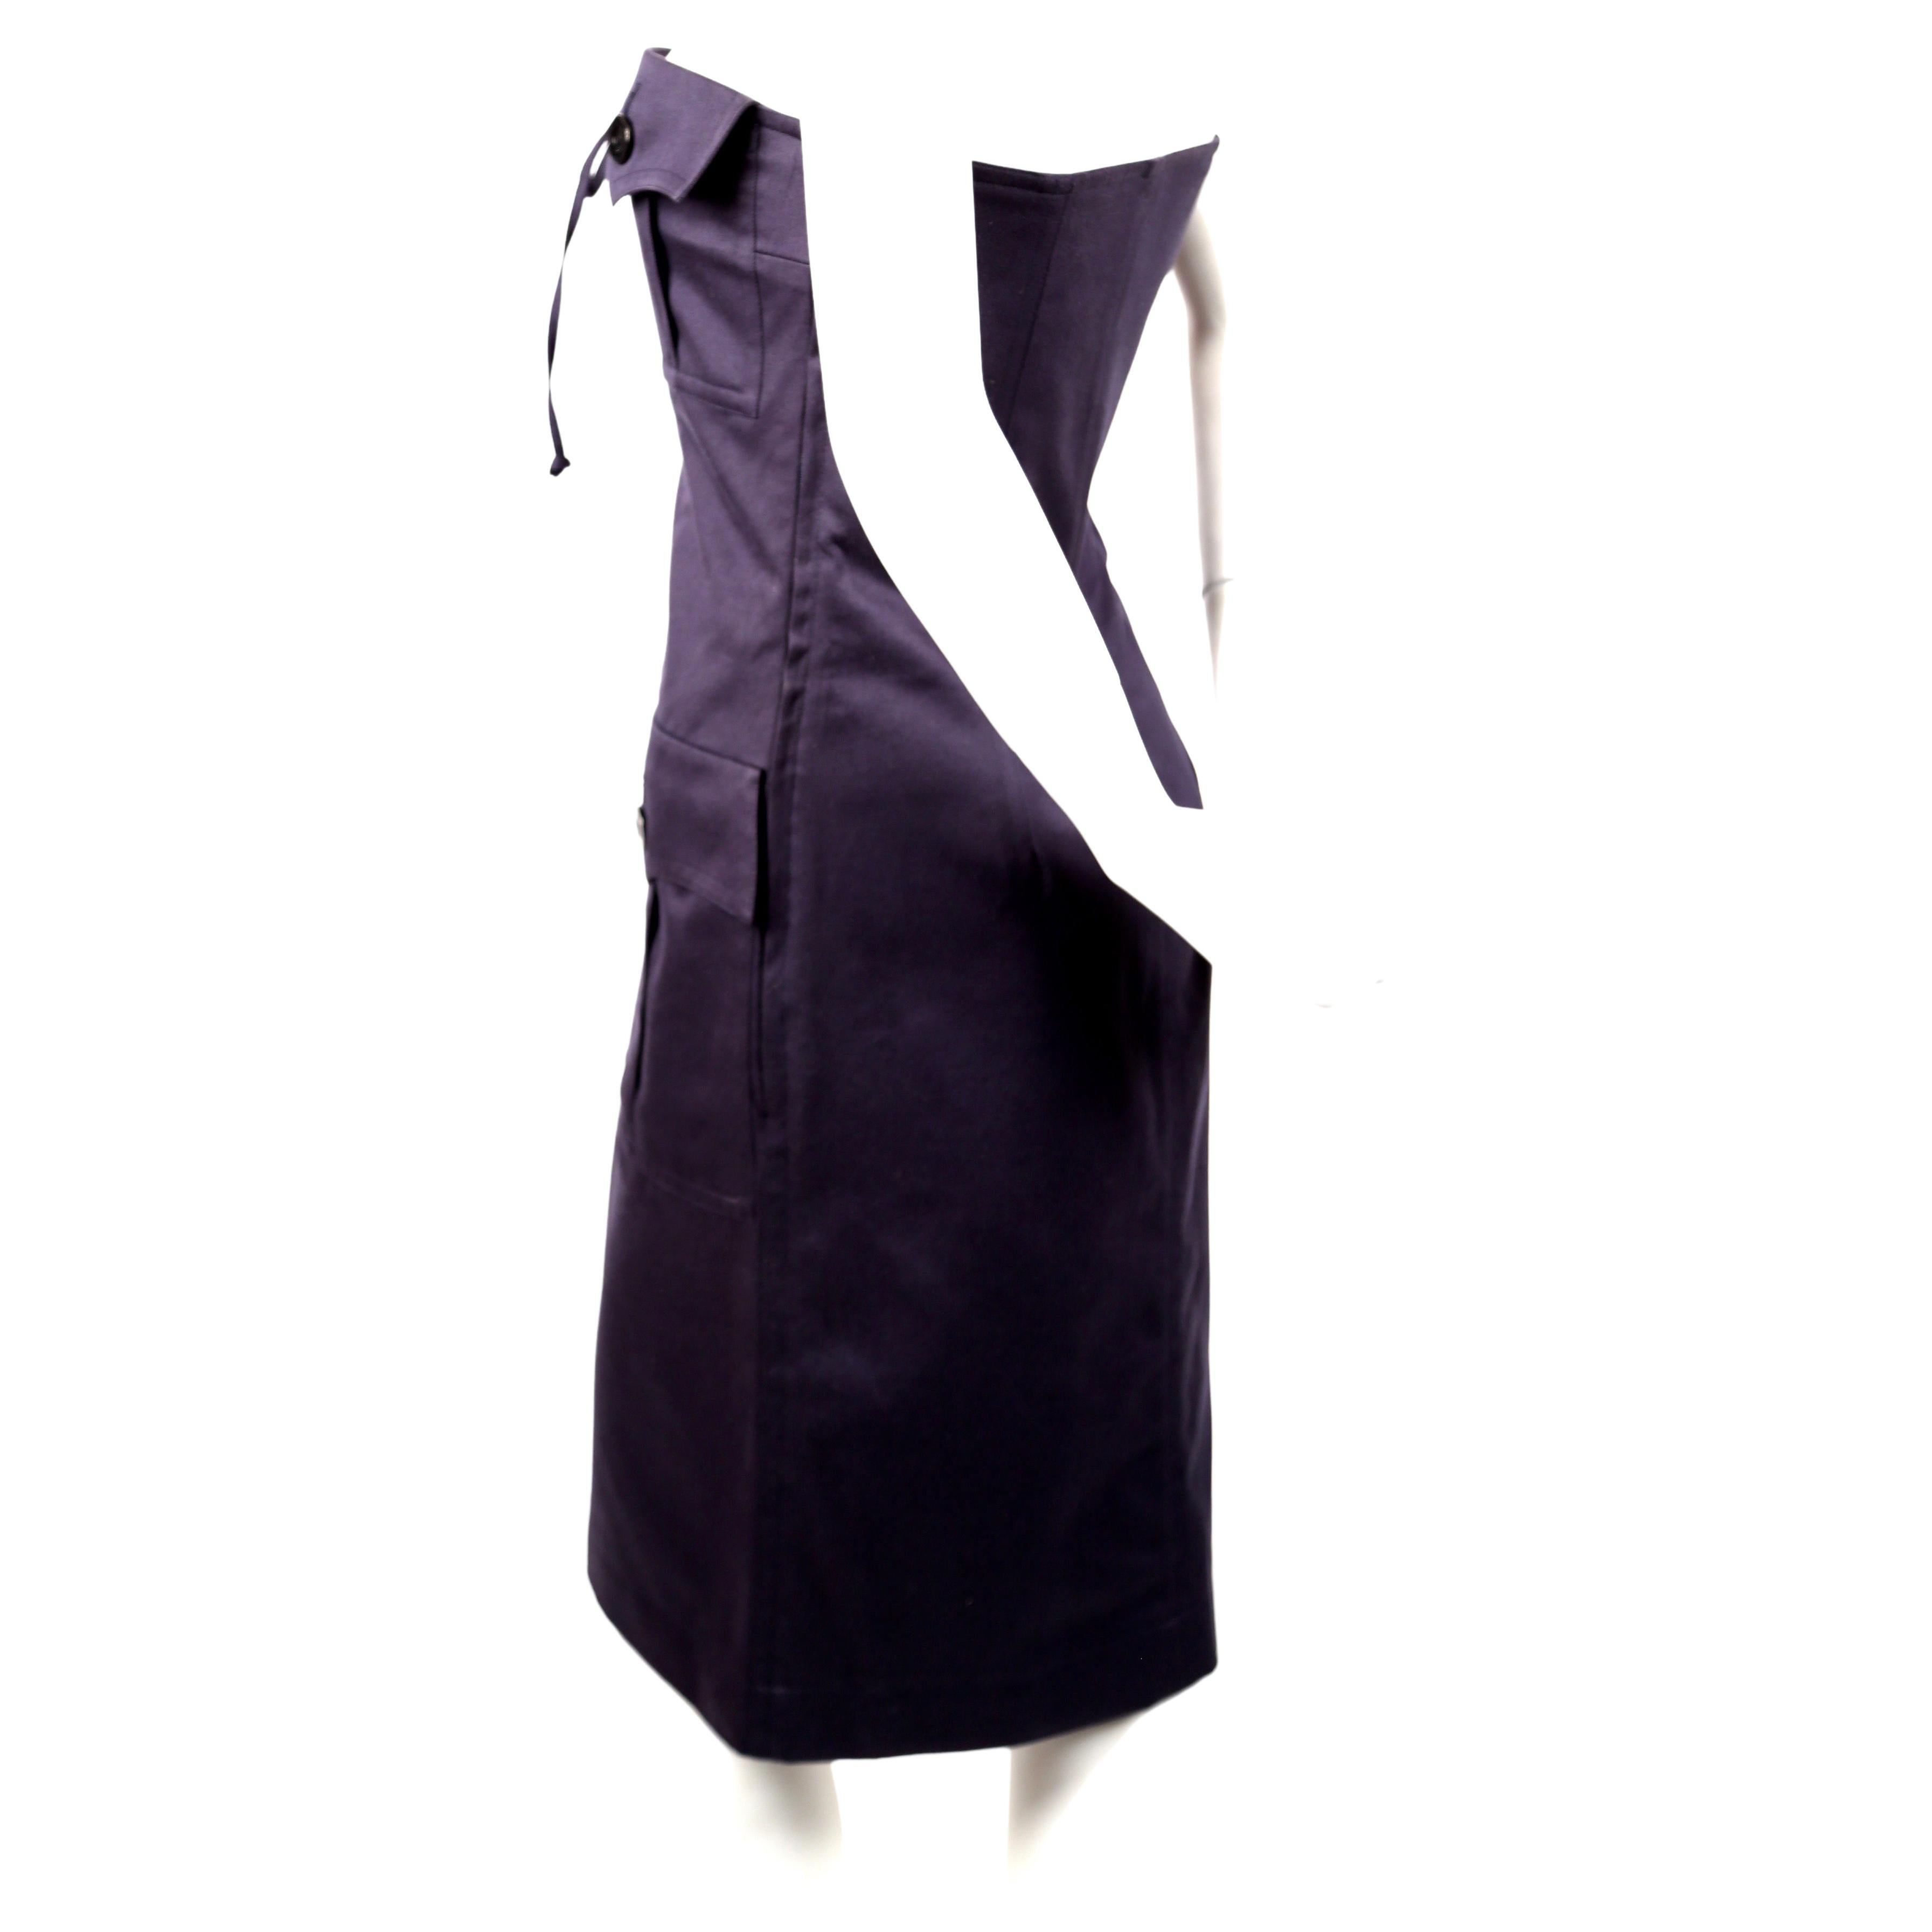 Robe safari en coton bleu marine, sans bretelles, conçue par Yves Saint Laurent et datant du début des années 1990. Taille française 38. La robe peut être ajustée à l'aide de liens mais convient mieux à une poitrine de 31-33